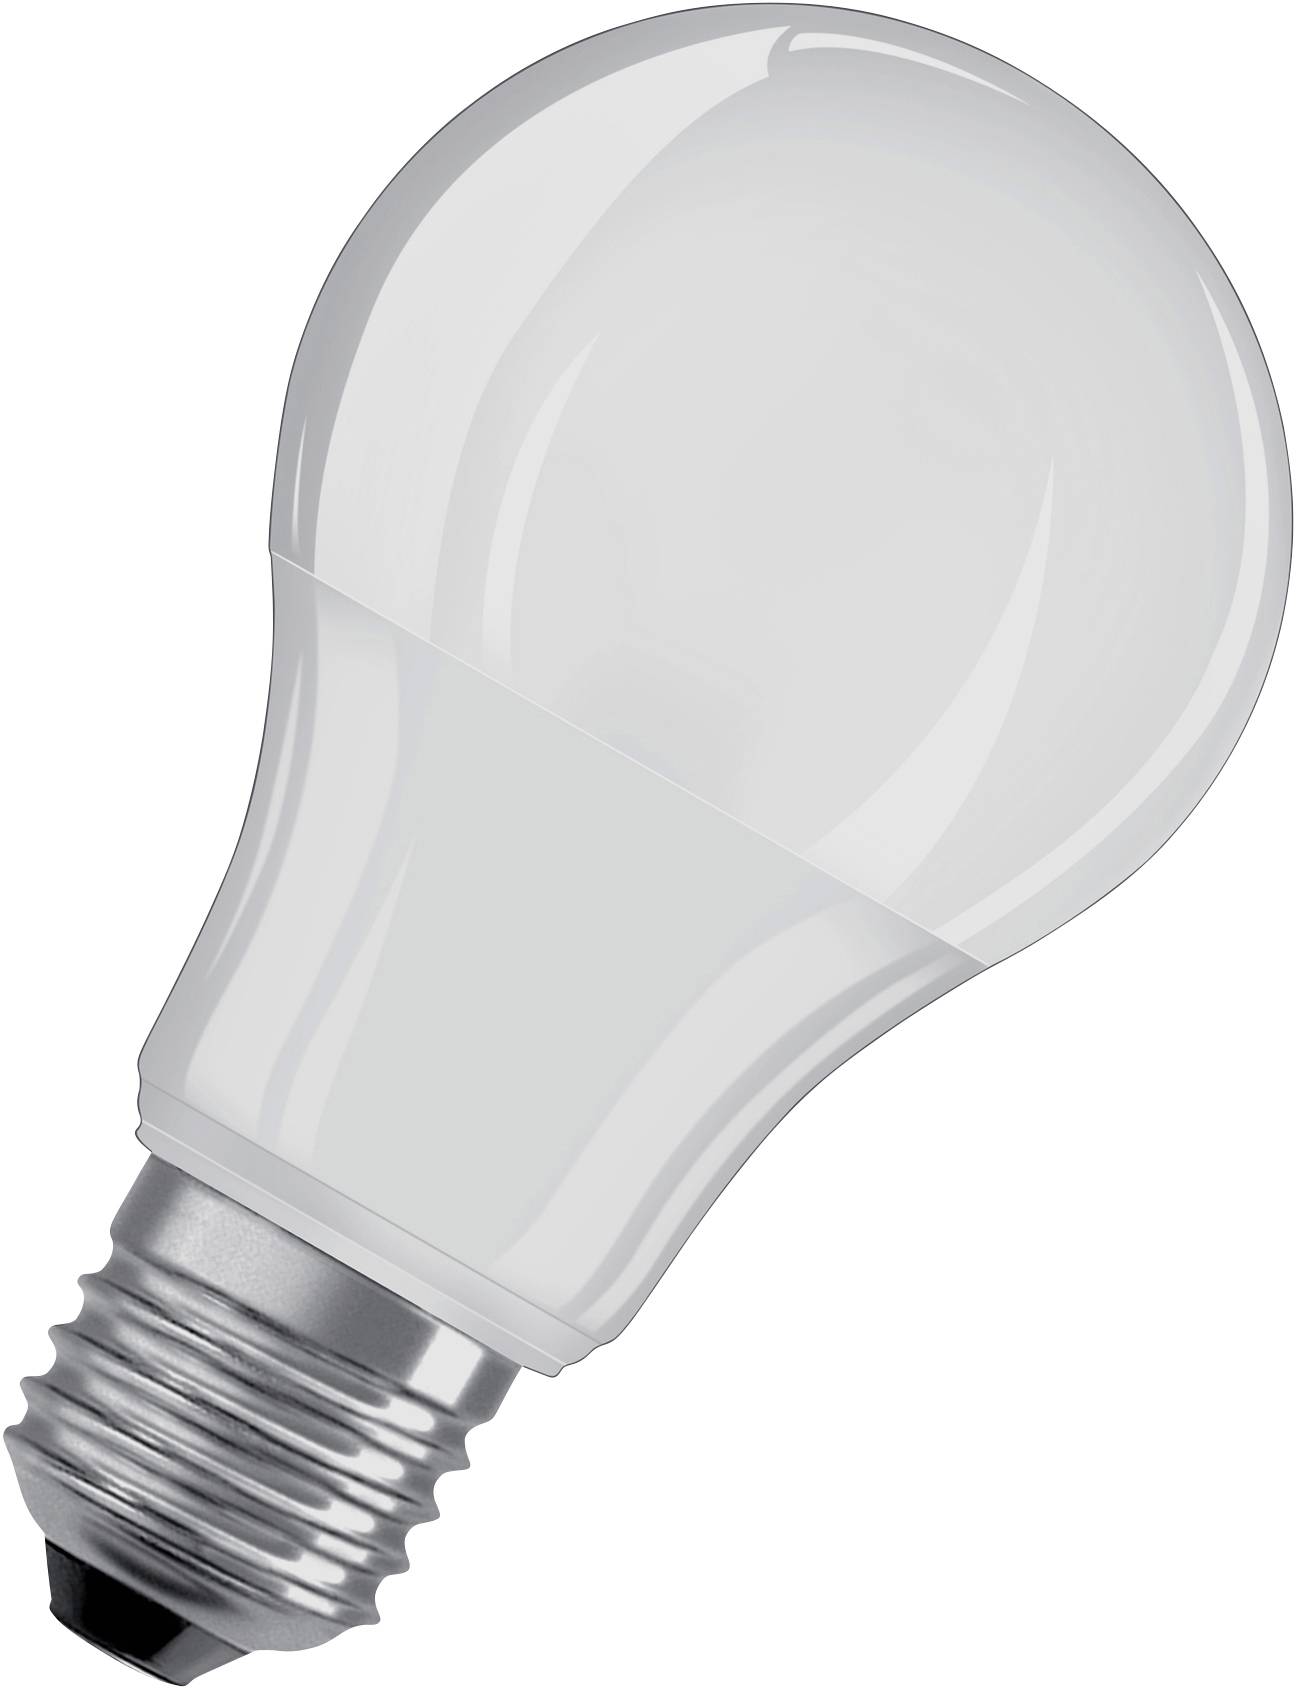 OSRAM LED EEK A+ (A++ - E) E27 Glühlampenform 6 W Warmweiß 1 St.